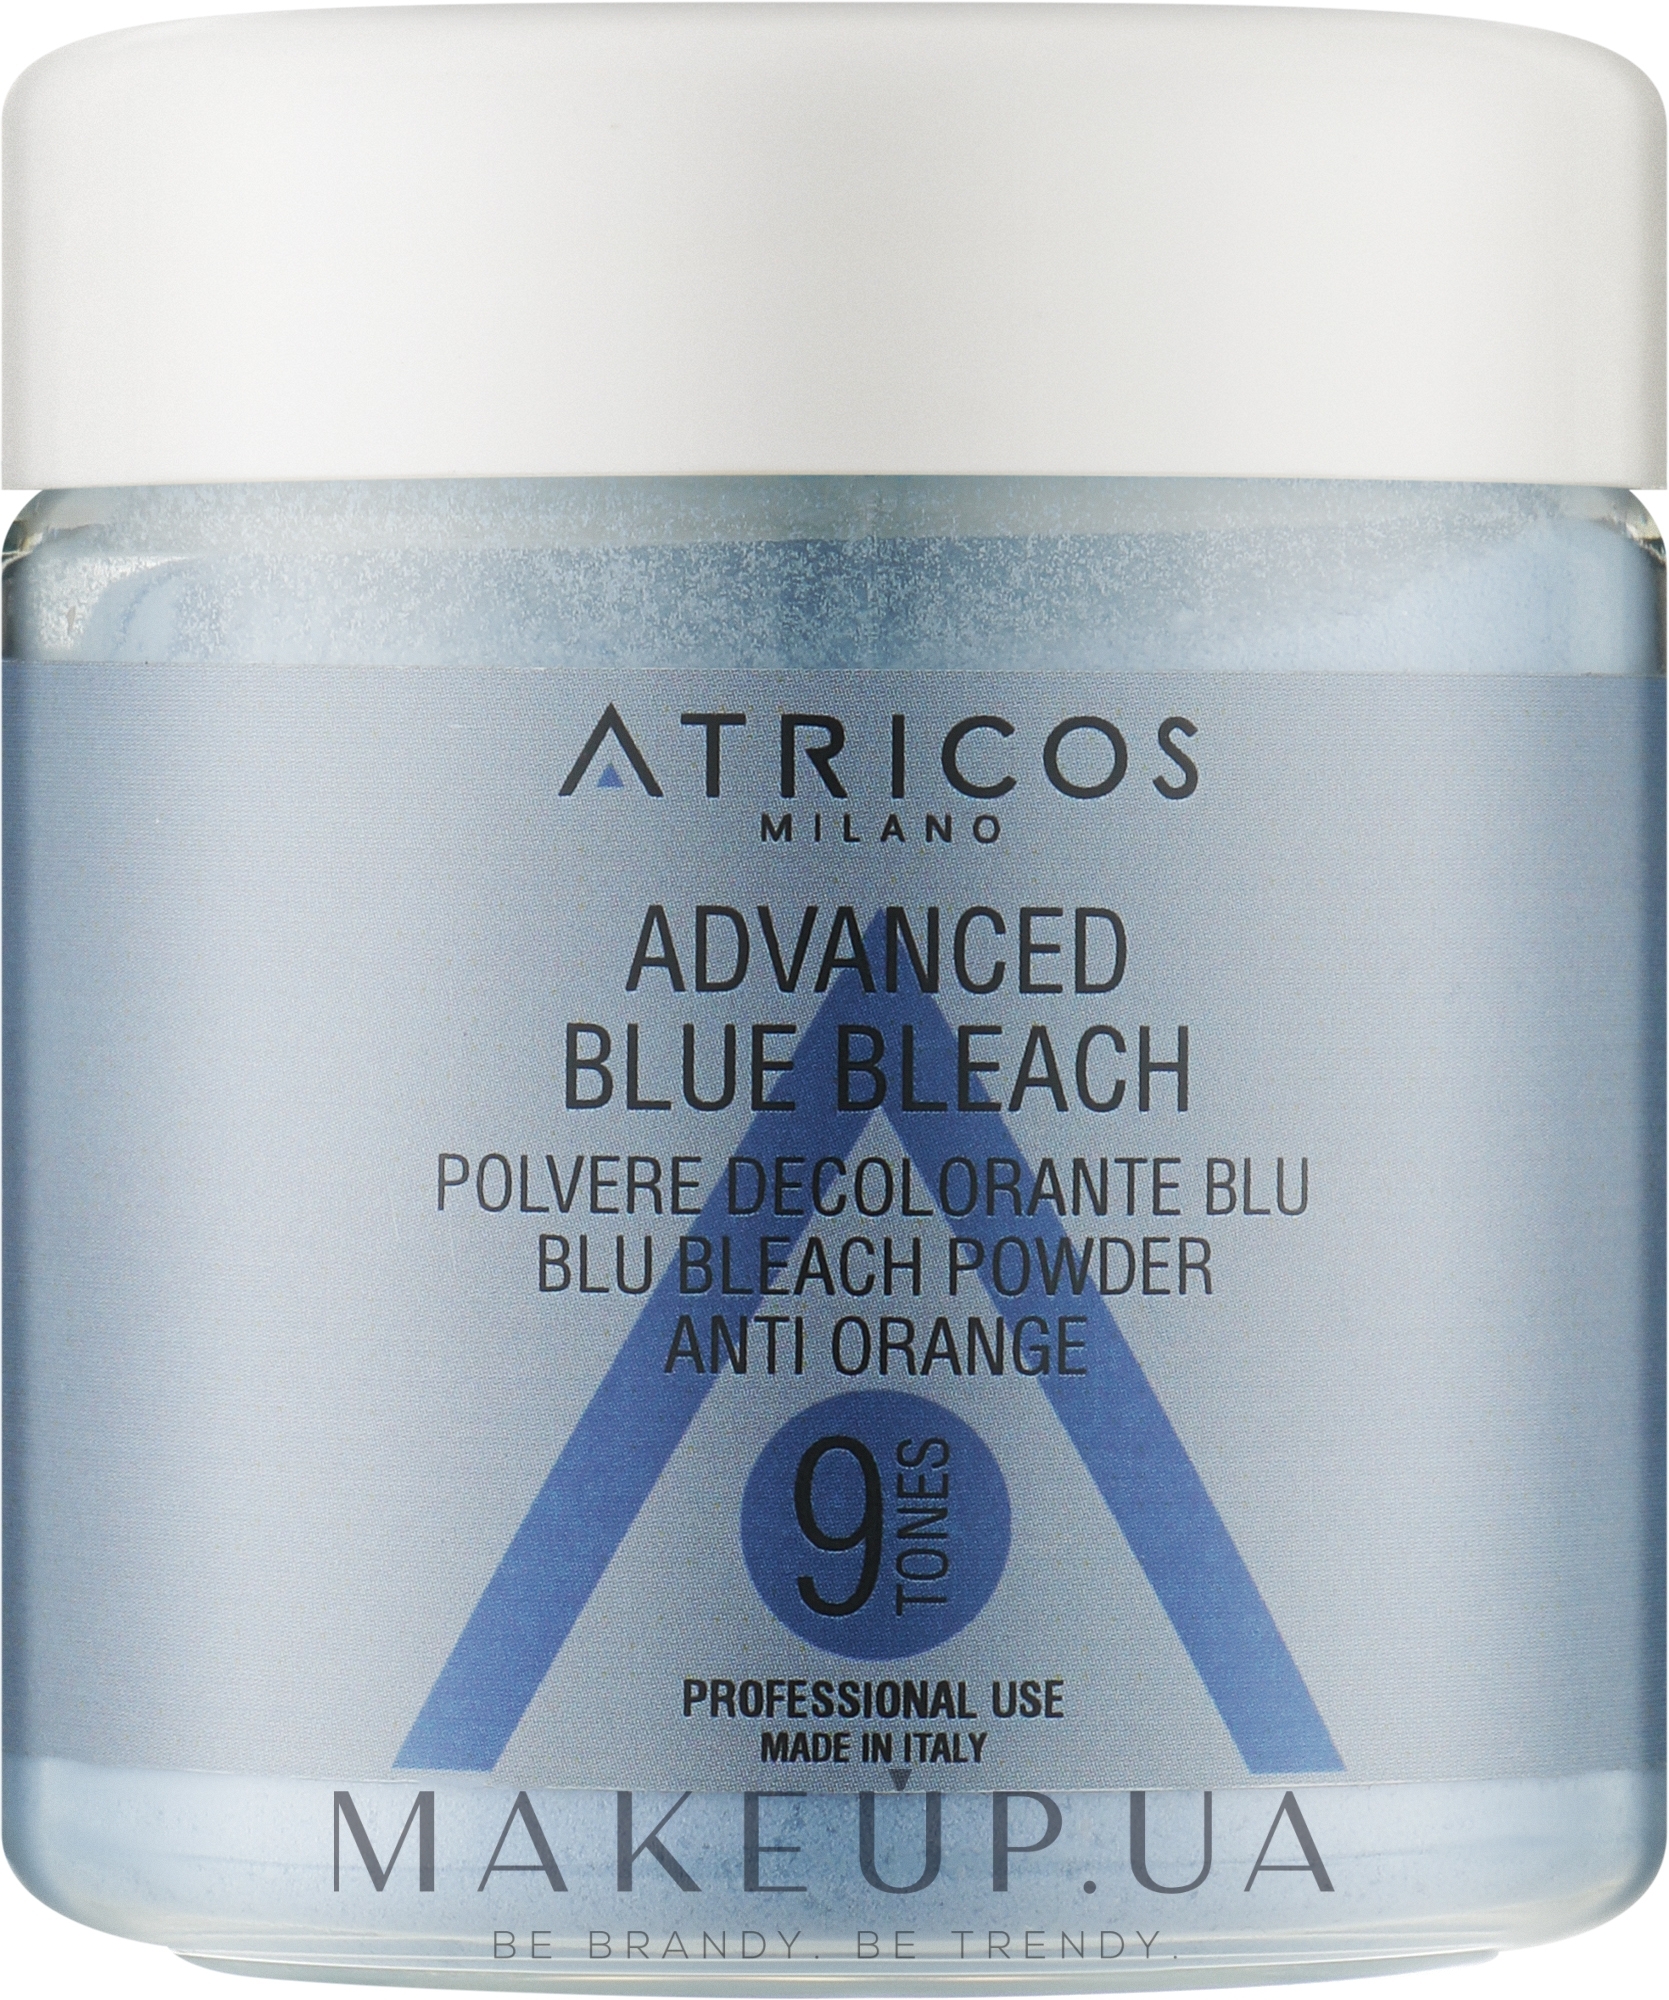 Освітлювальна пудра "Блондеран для освітлення волосся до 9 тонів" - Atricos Advanced Blue Bleach Powder — фото 150g